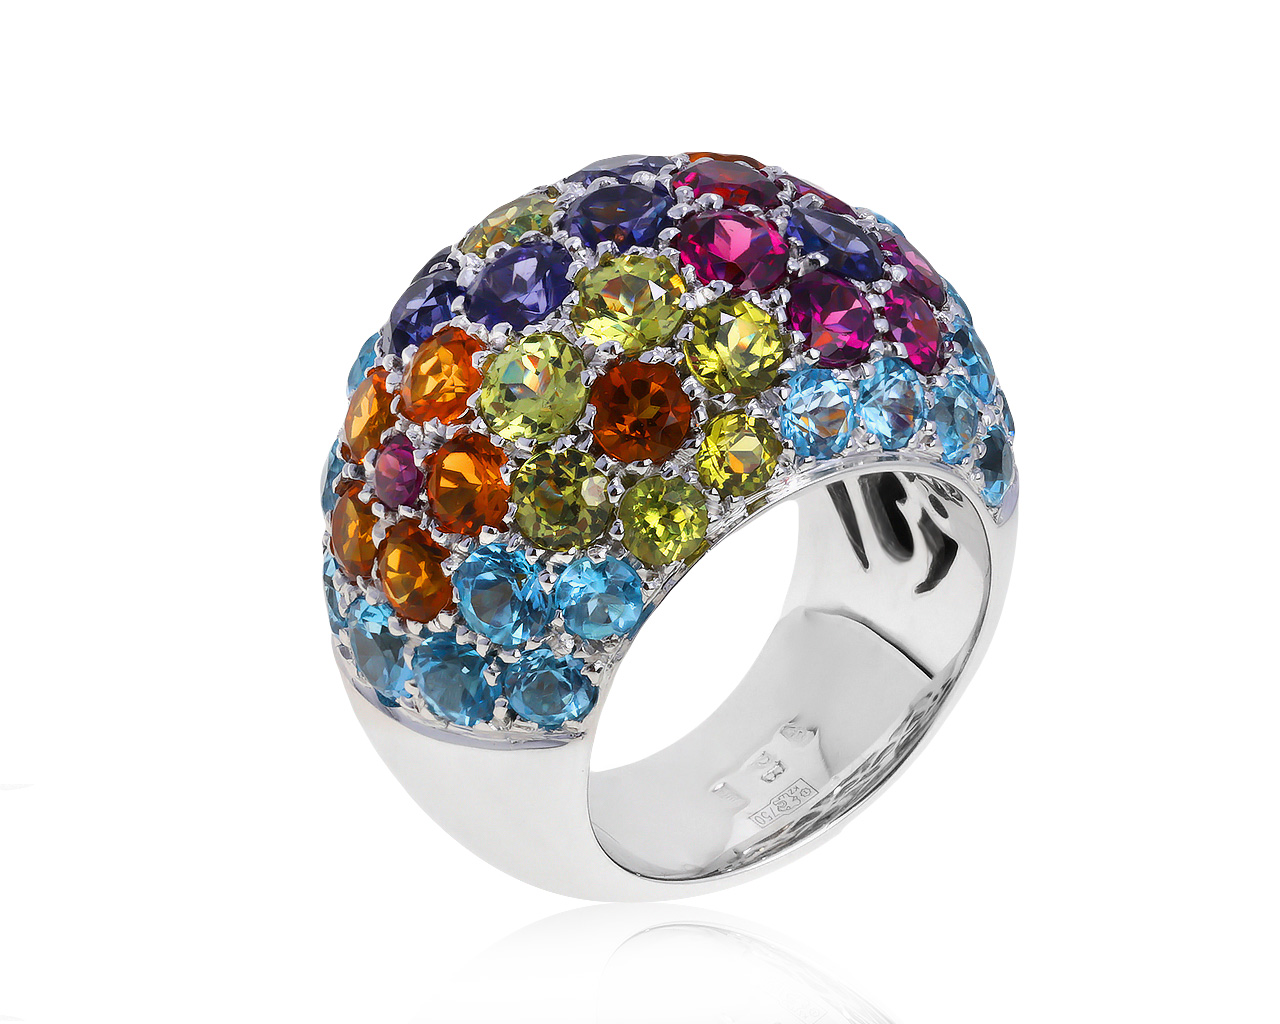 Оригинальное золотое кольцо с цветными камнями 8.37ct Pasquale Bruni 280521/37